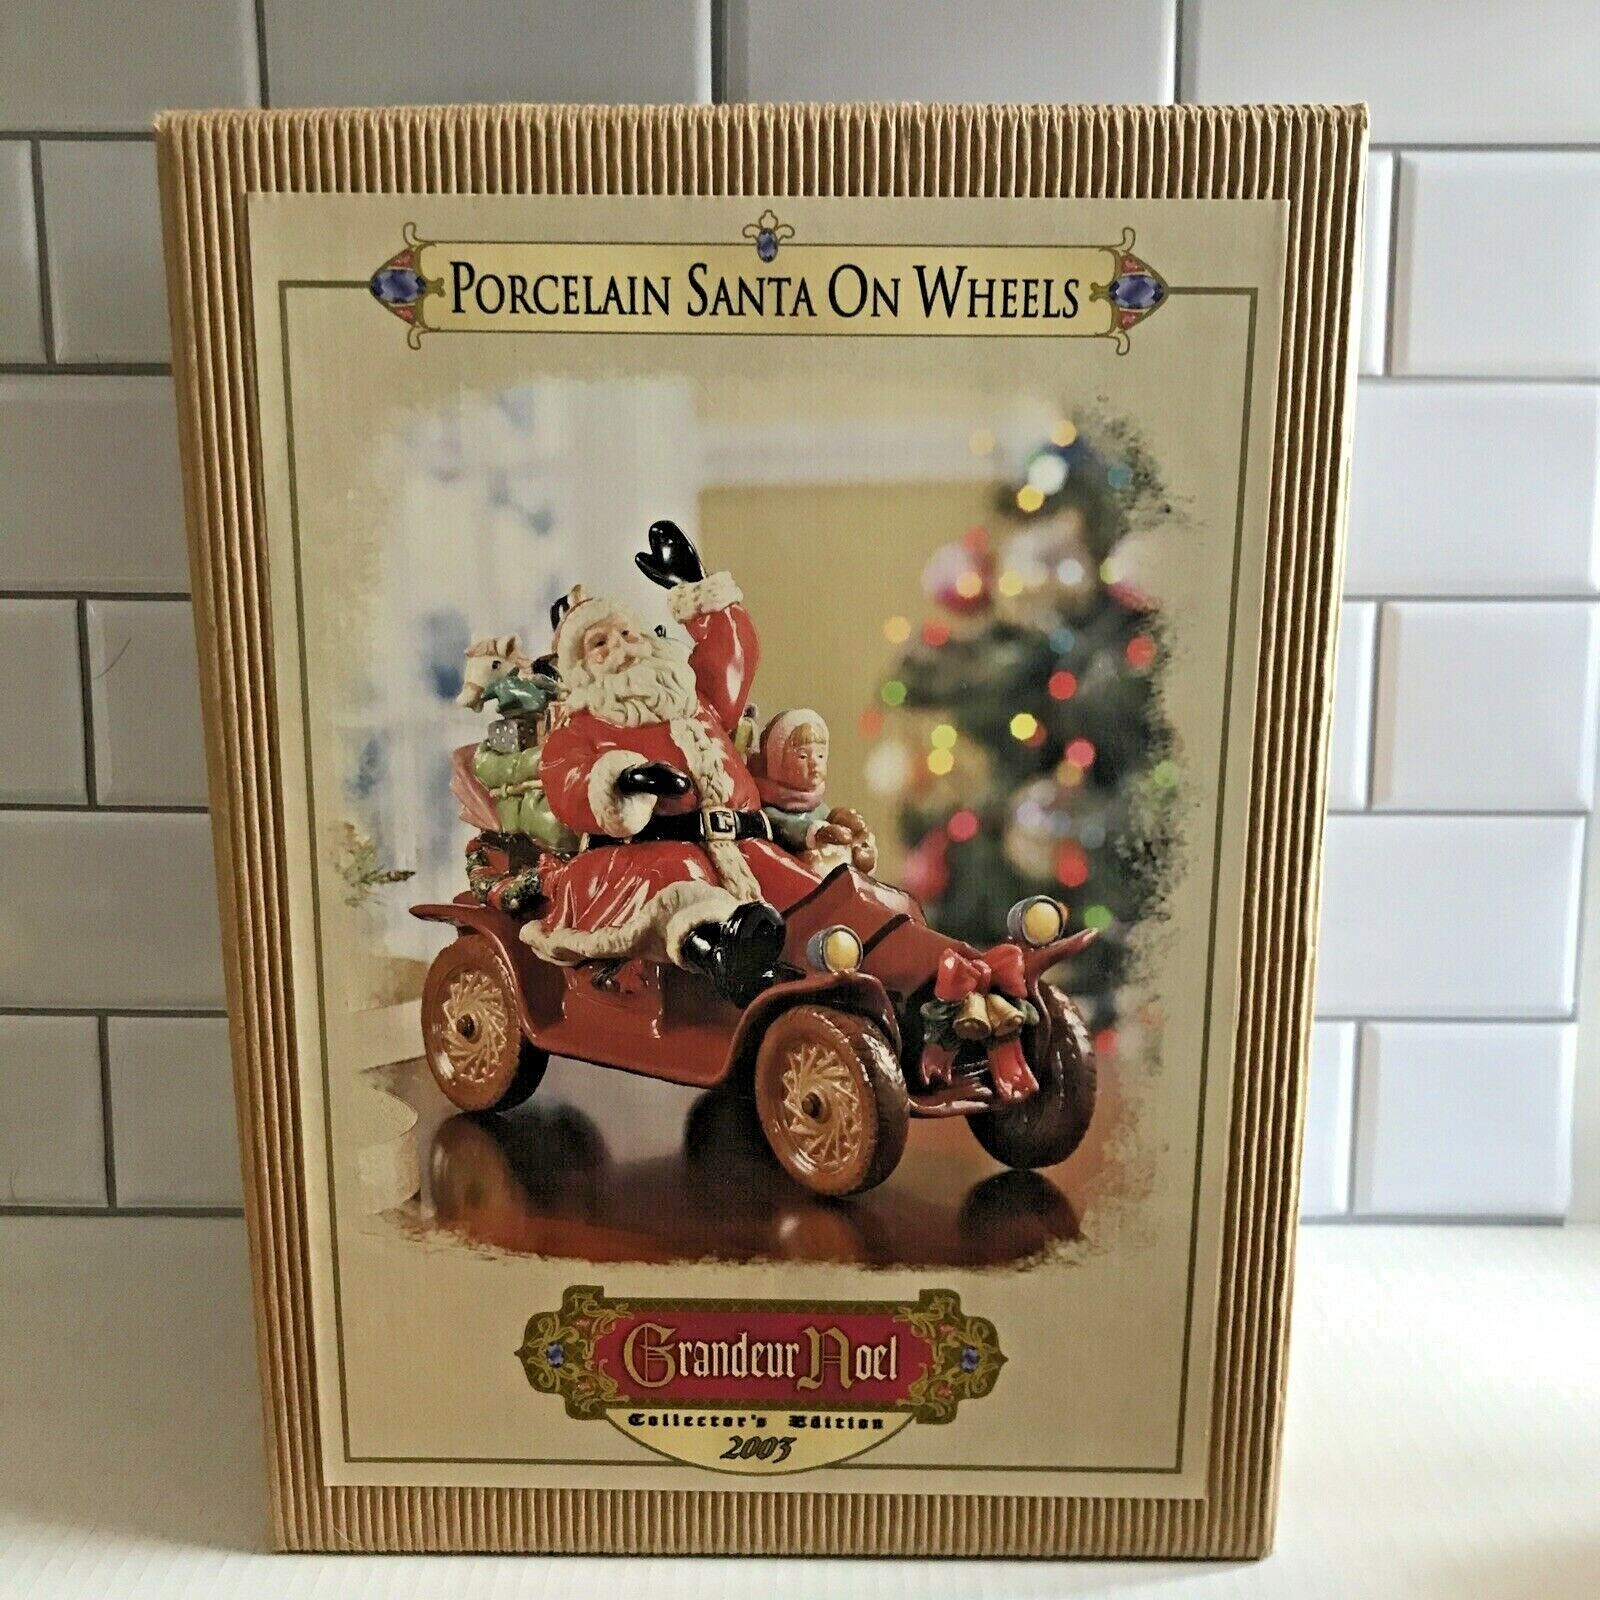 Grandeur Noel Porcelain Santa On Wheels Brown Car 2003 Collectors Edition